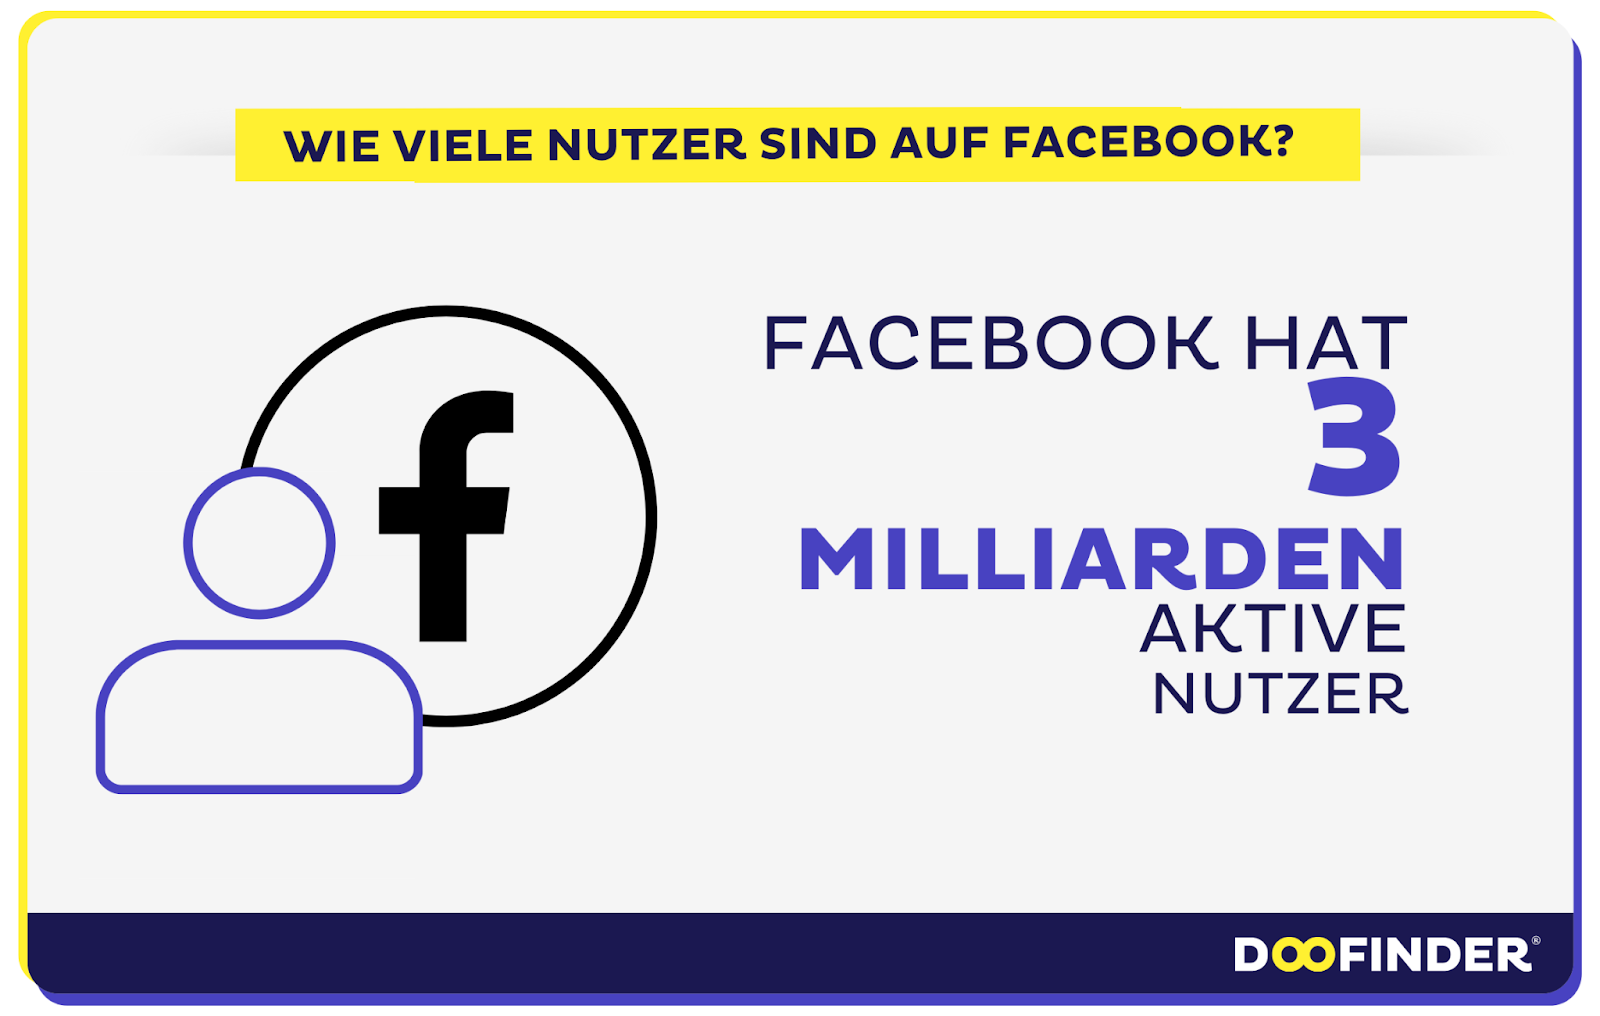 Facebook Nutzerzahlen in Deutschland und weltweit